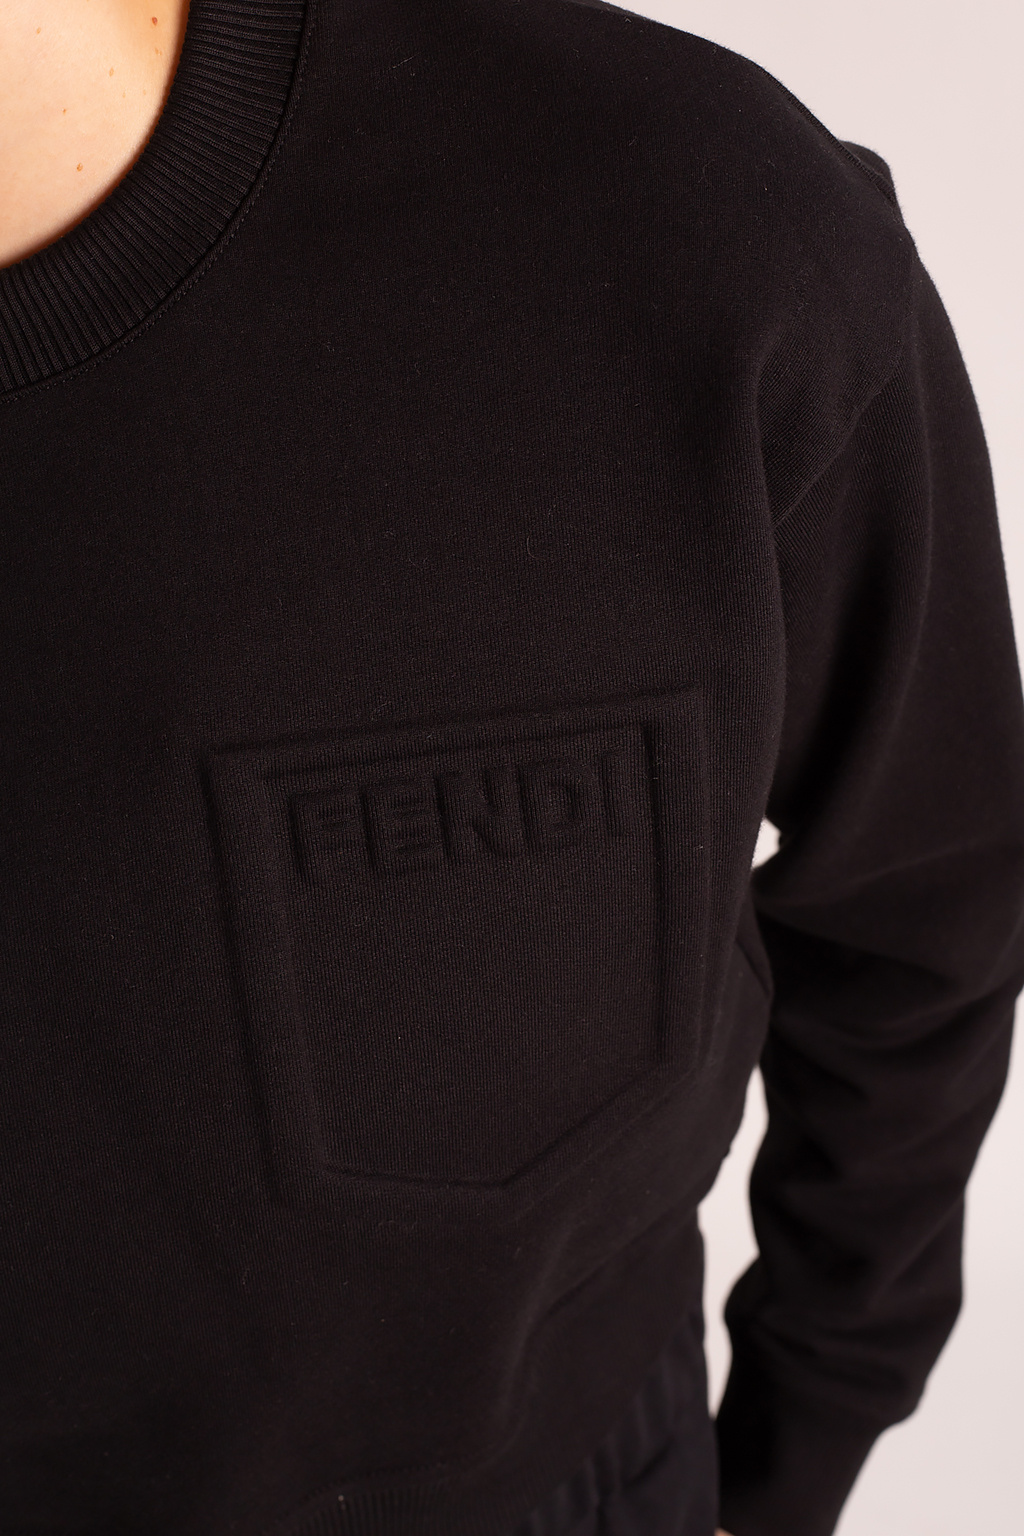 Fendi coat with logo